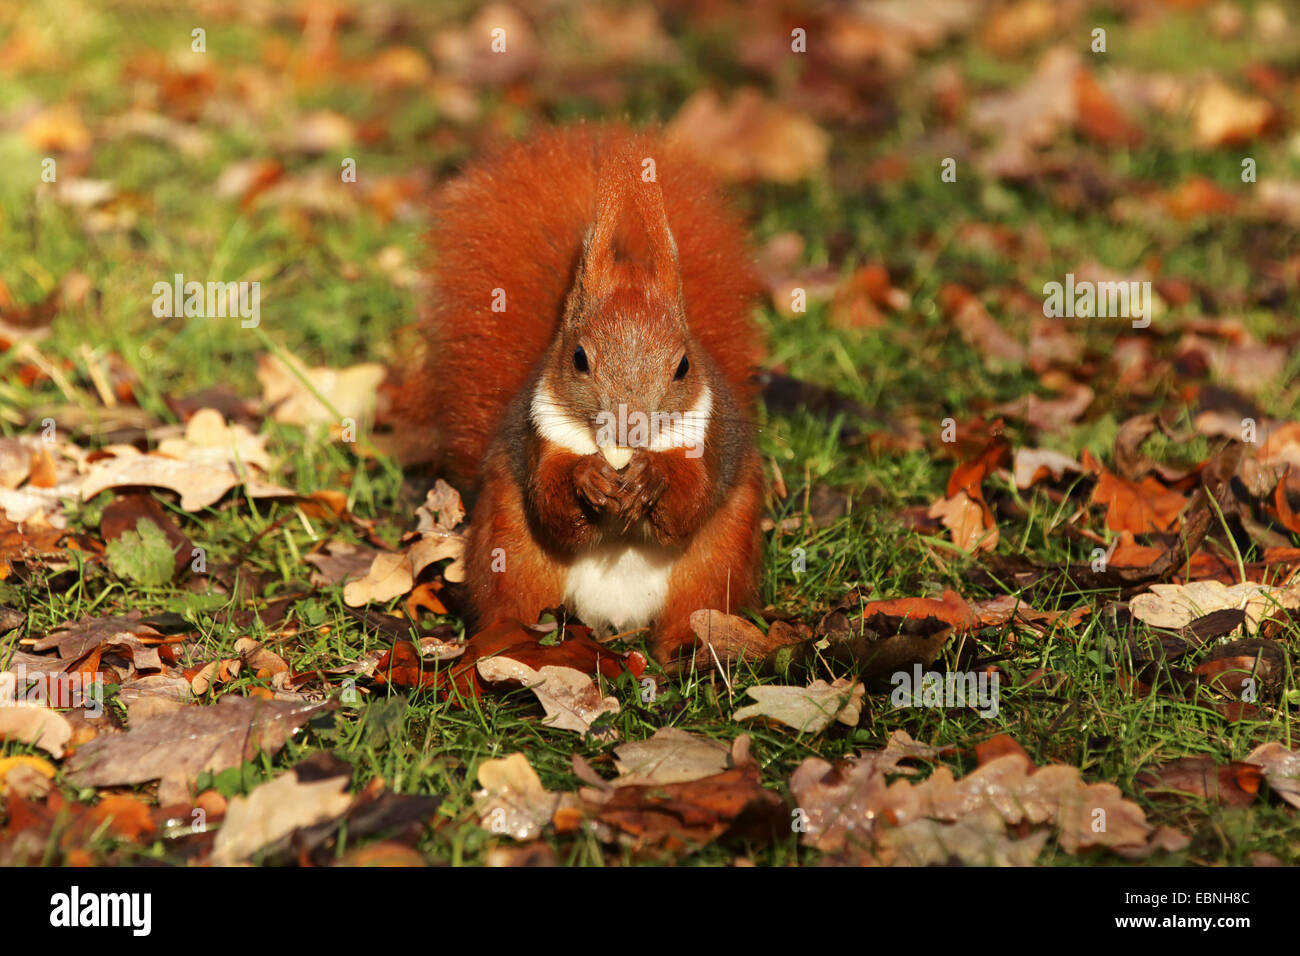 L'écureuil roux européen eurasien, l'écureuil roux (Sciurus vulgaris), assis sur le sol et l'alimentation, de l'Allemagne, la Saxe Banque D'Images